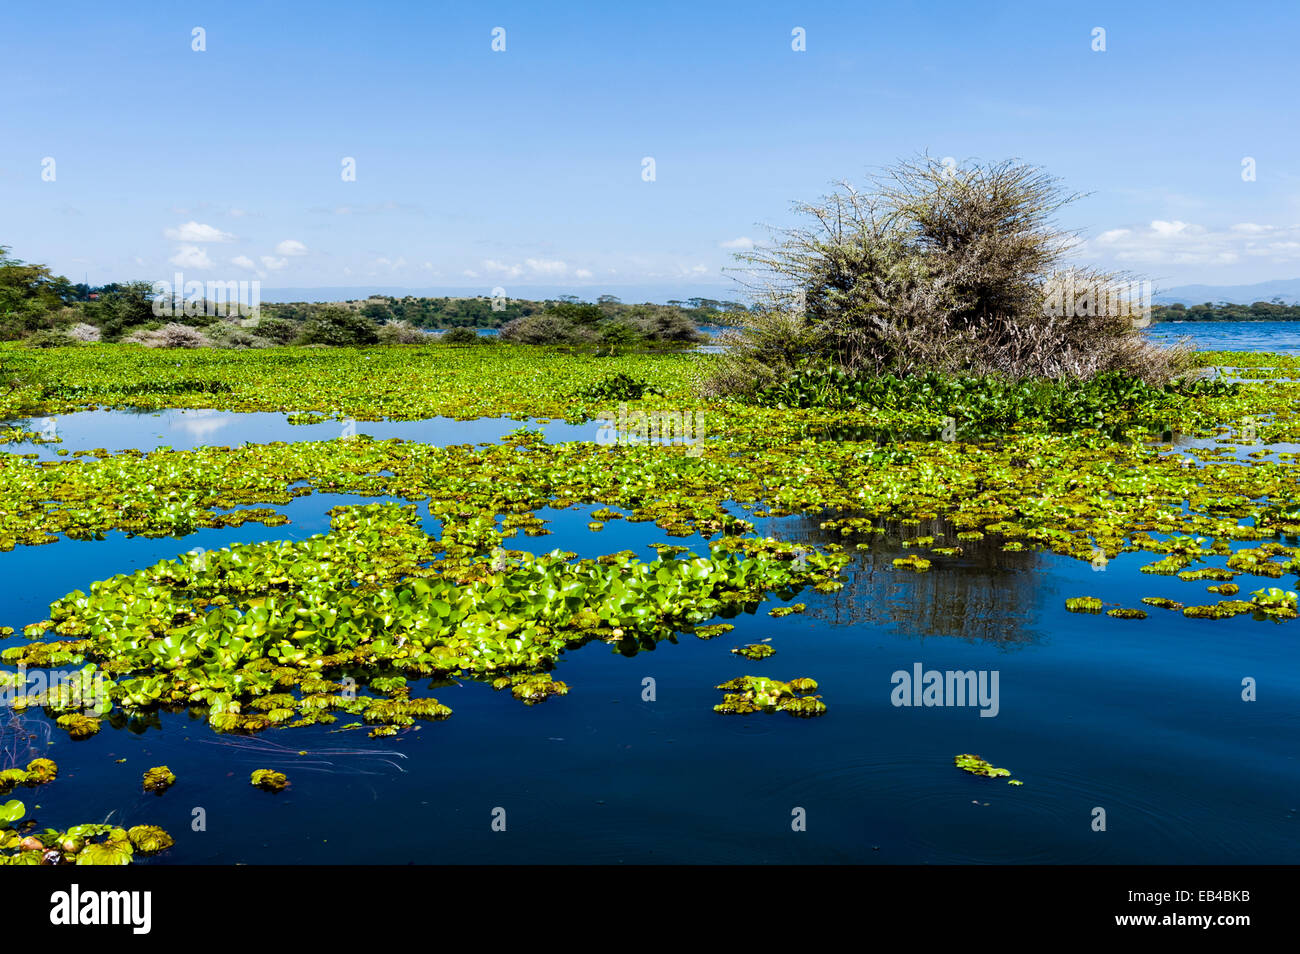 A dense mat of invasive water hyacinth choking the surface of Lake Naivasha. Stock Photo